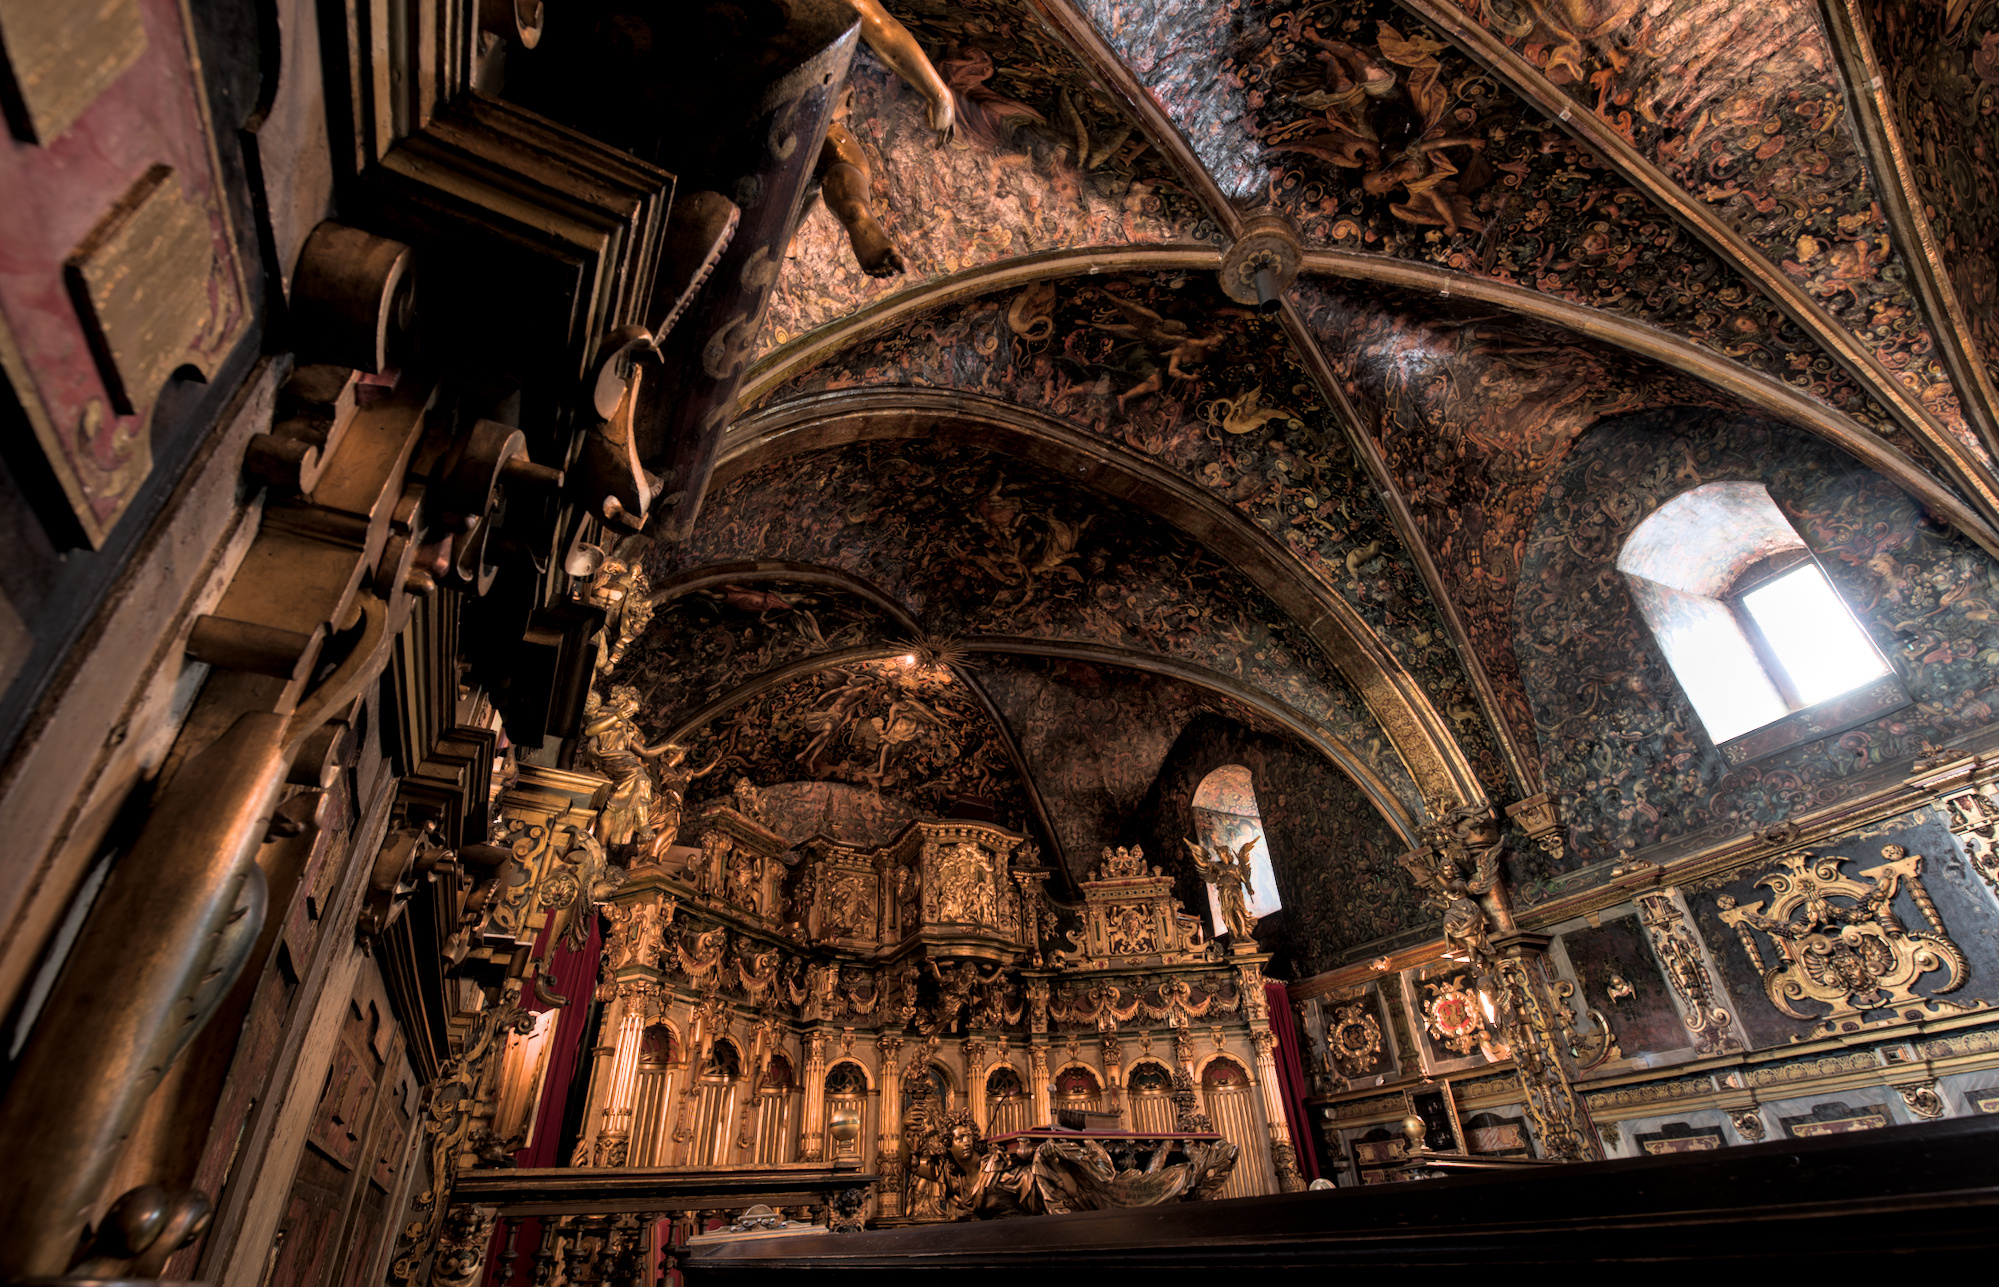 Der Altar in einer sehr Prunkvollen Schlosskapelle. Die Wände und die Decke sind aufwendig verziert und bemahlt